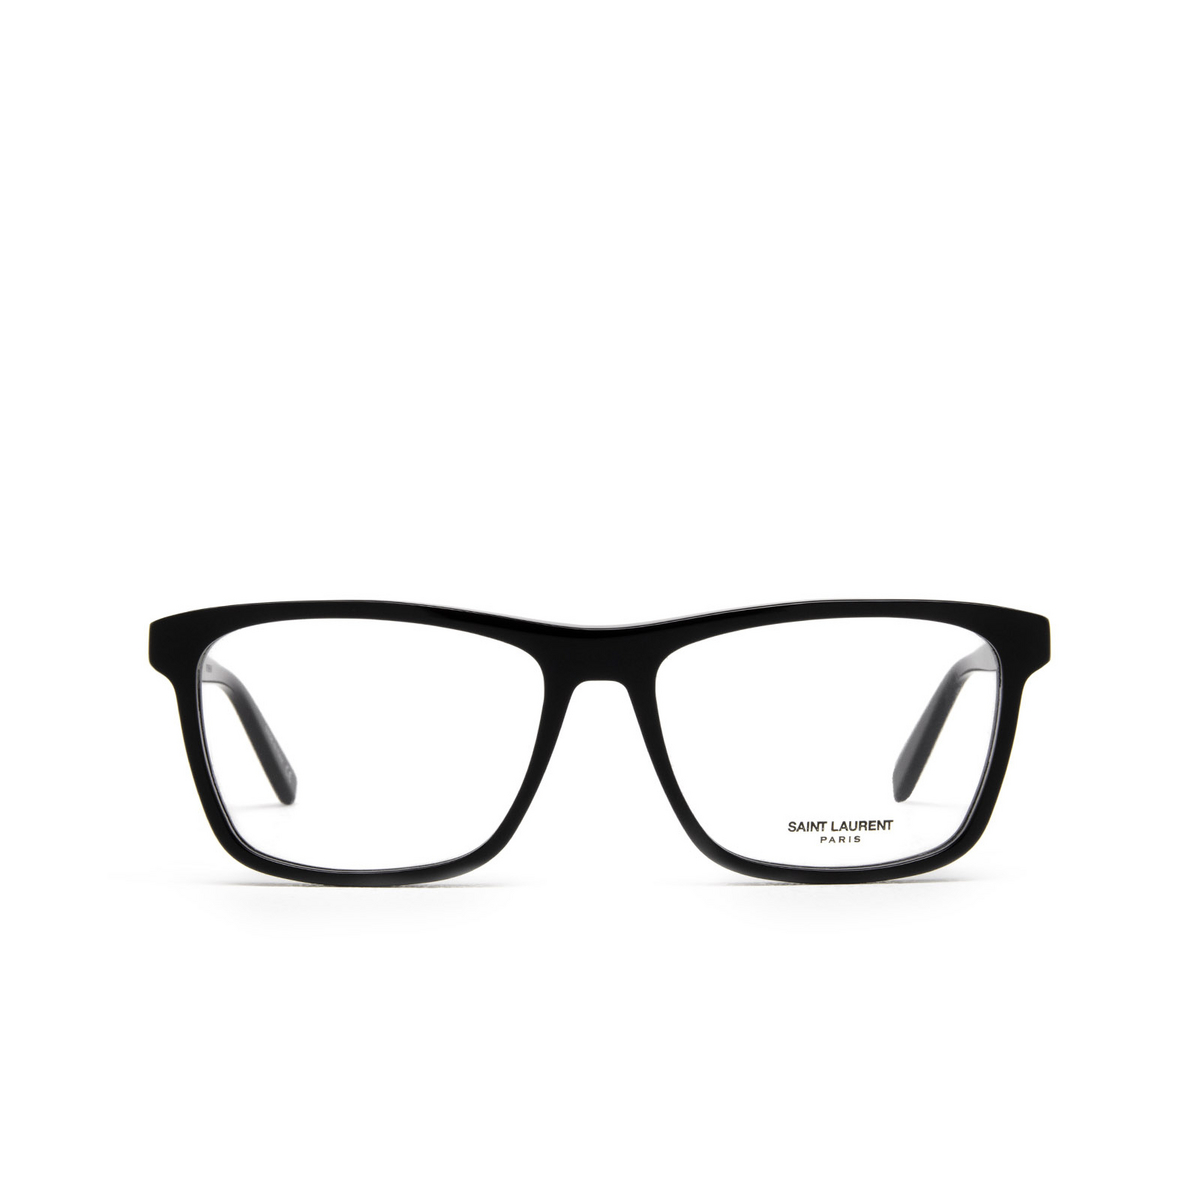 Saint Laurent® Square Eyeglasses: SL 505 color Black 001 - front view.